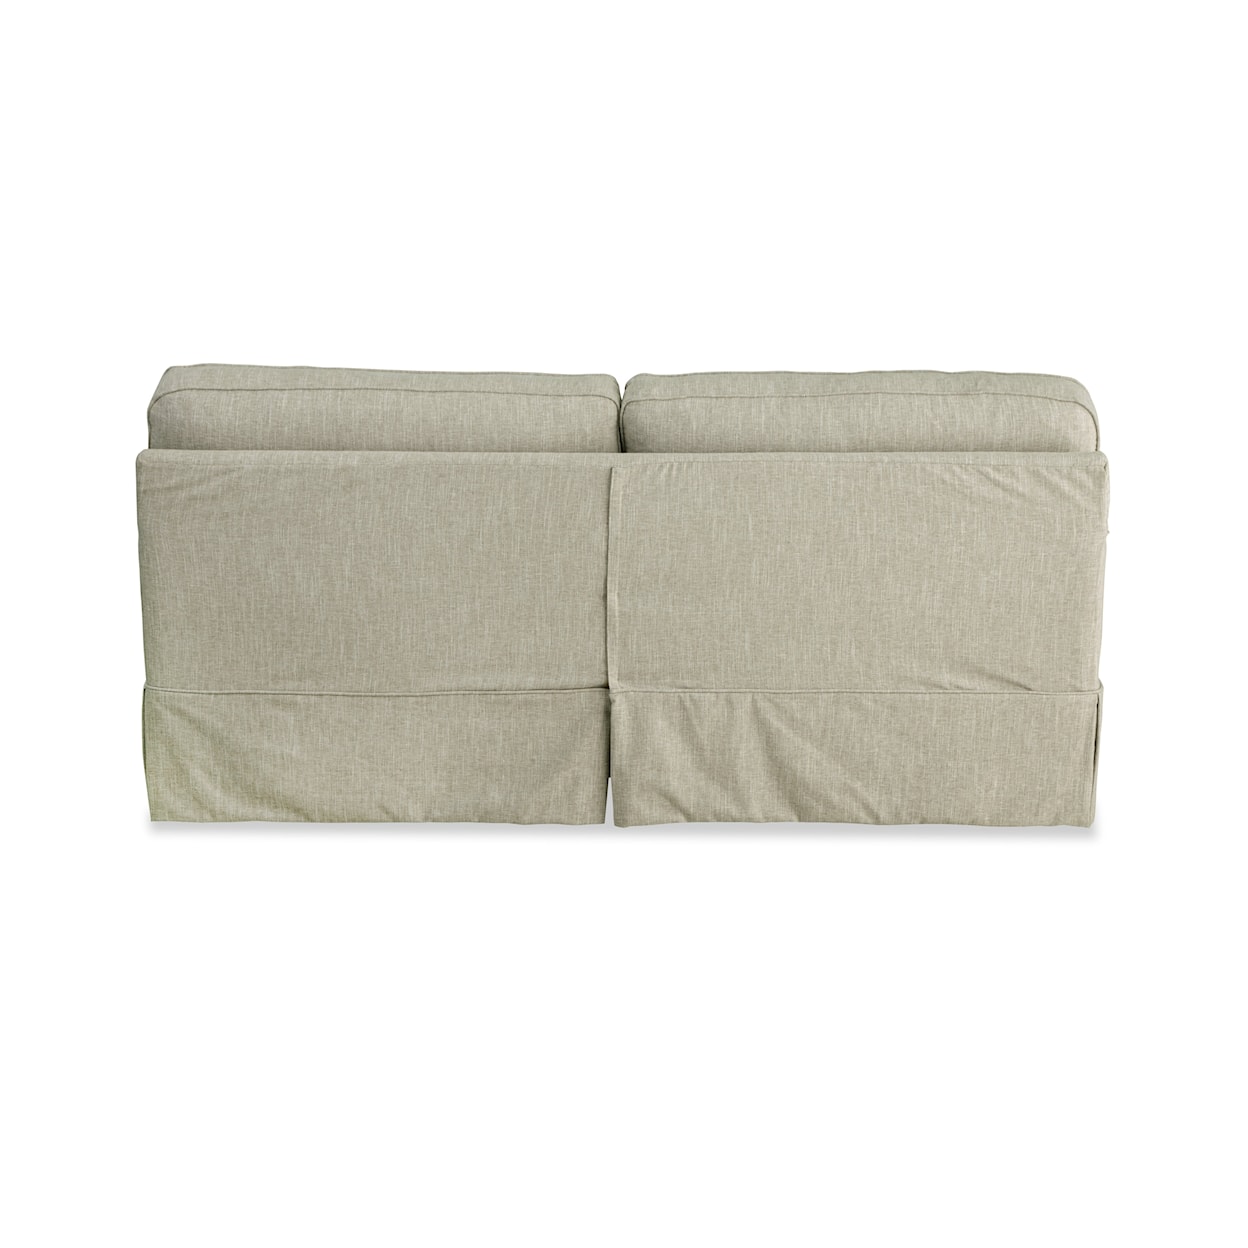 Hickorycraft 937450BD 2-Cushion Slipcover Sofa